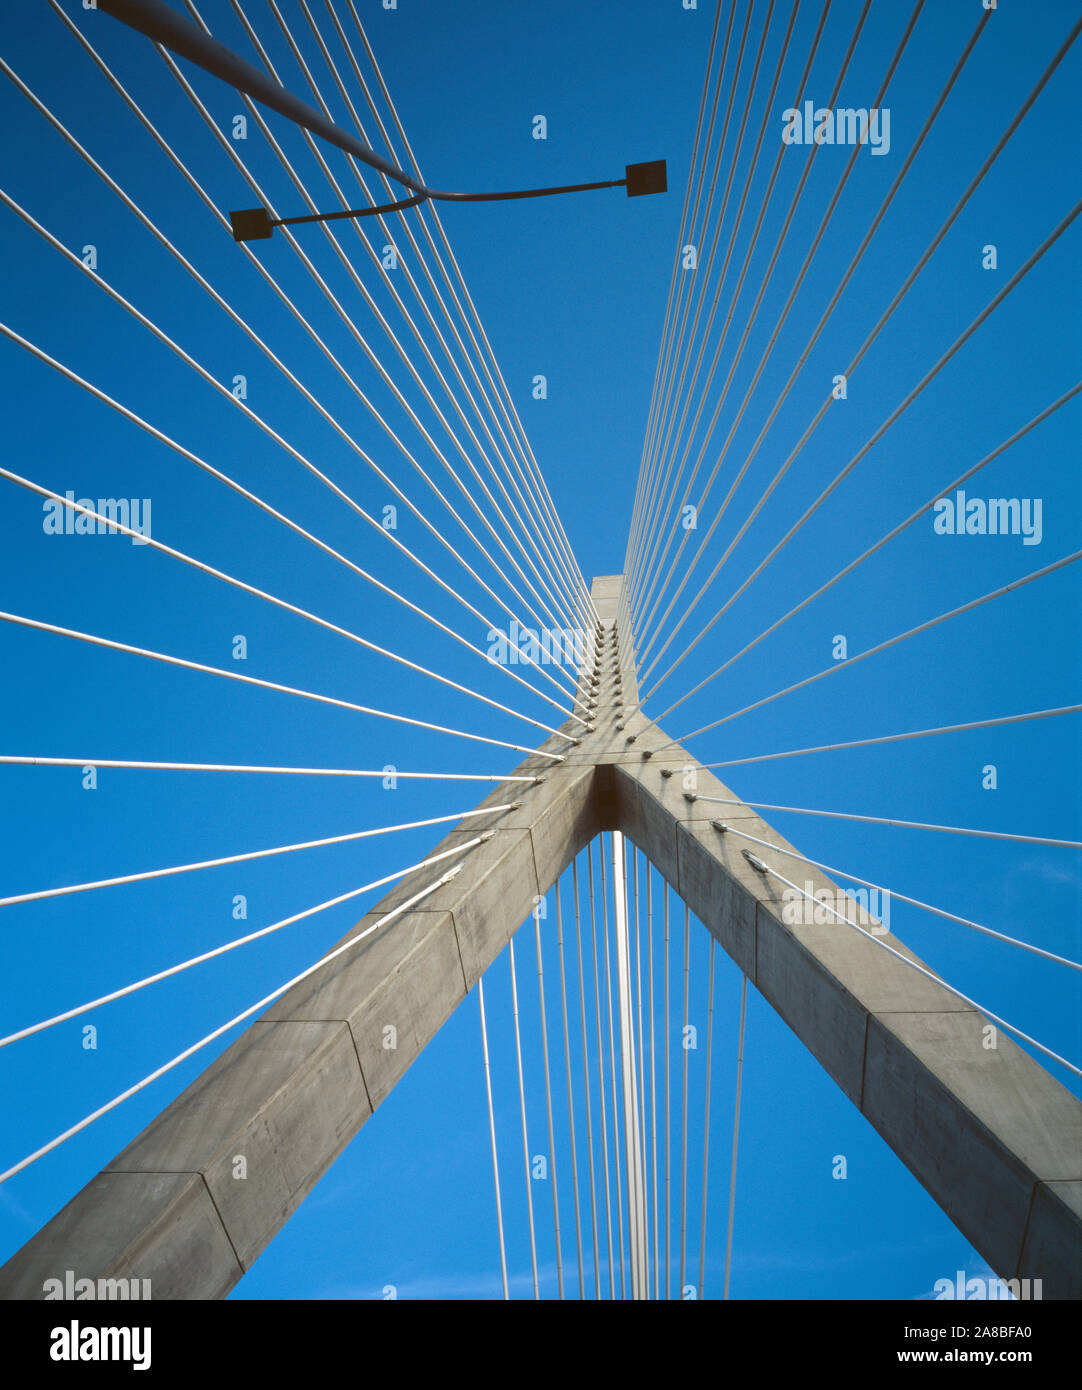 Détail architectural de Zakim Bridge contre ciel bleu clair, Boston, Massachusetts, USA Banque D'Images